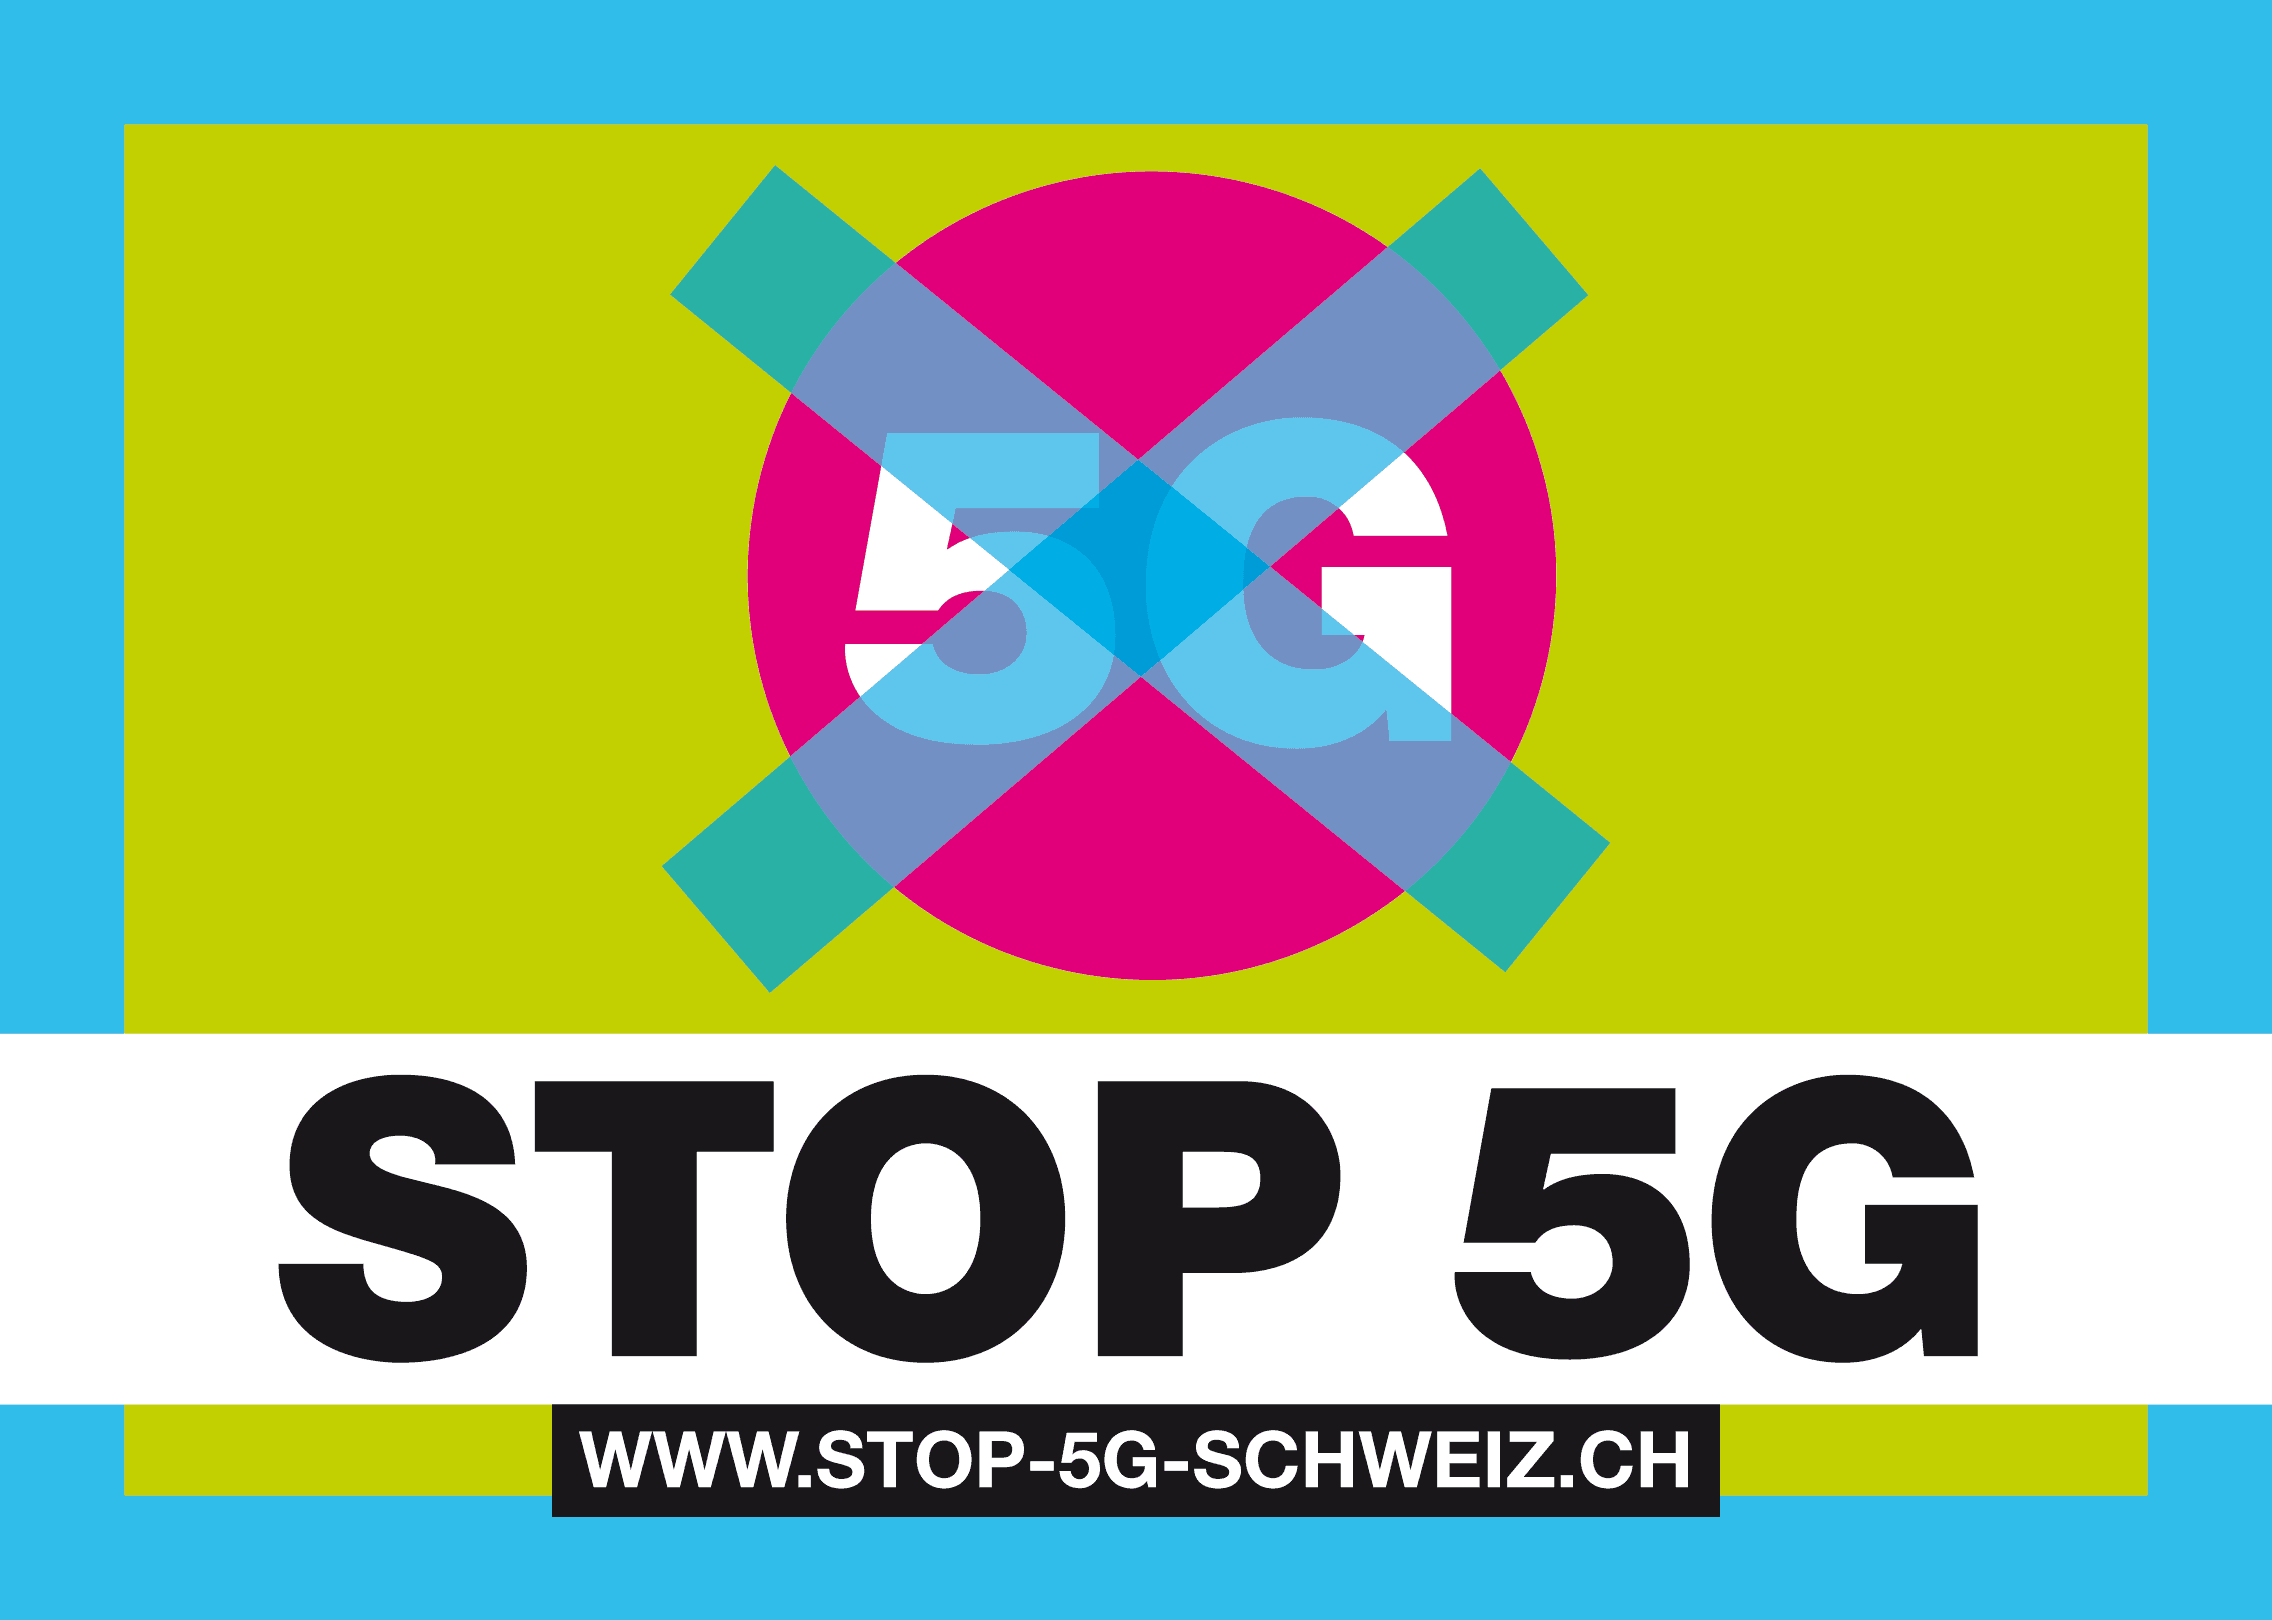 (c) Stop-5g-schweiz.ch